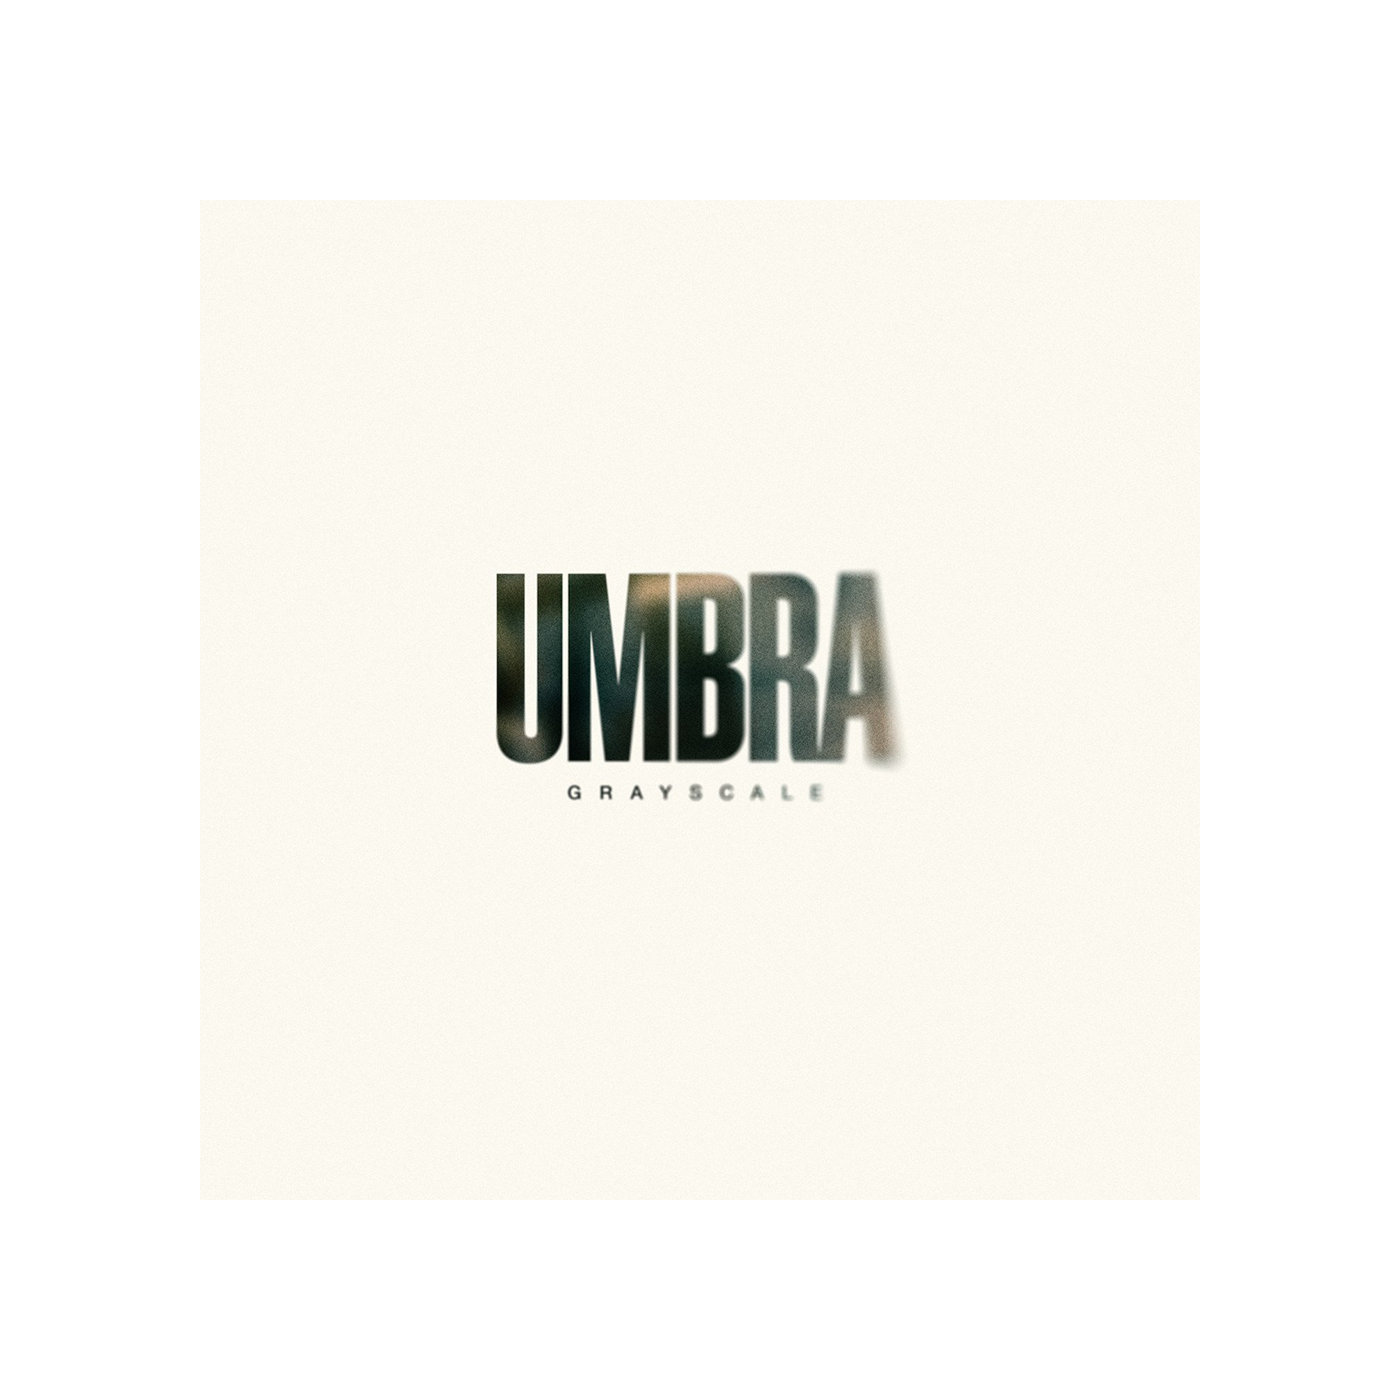 "Umbra" Digital Album